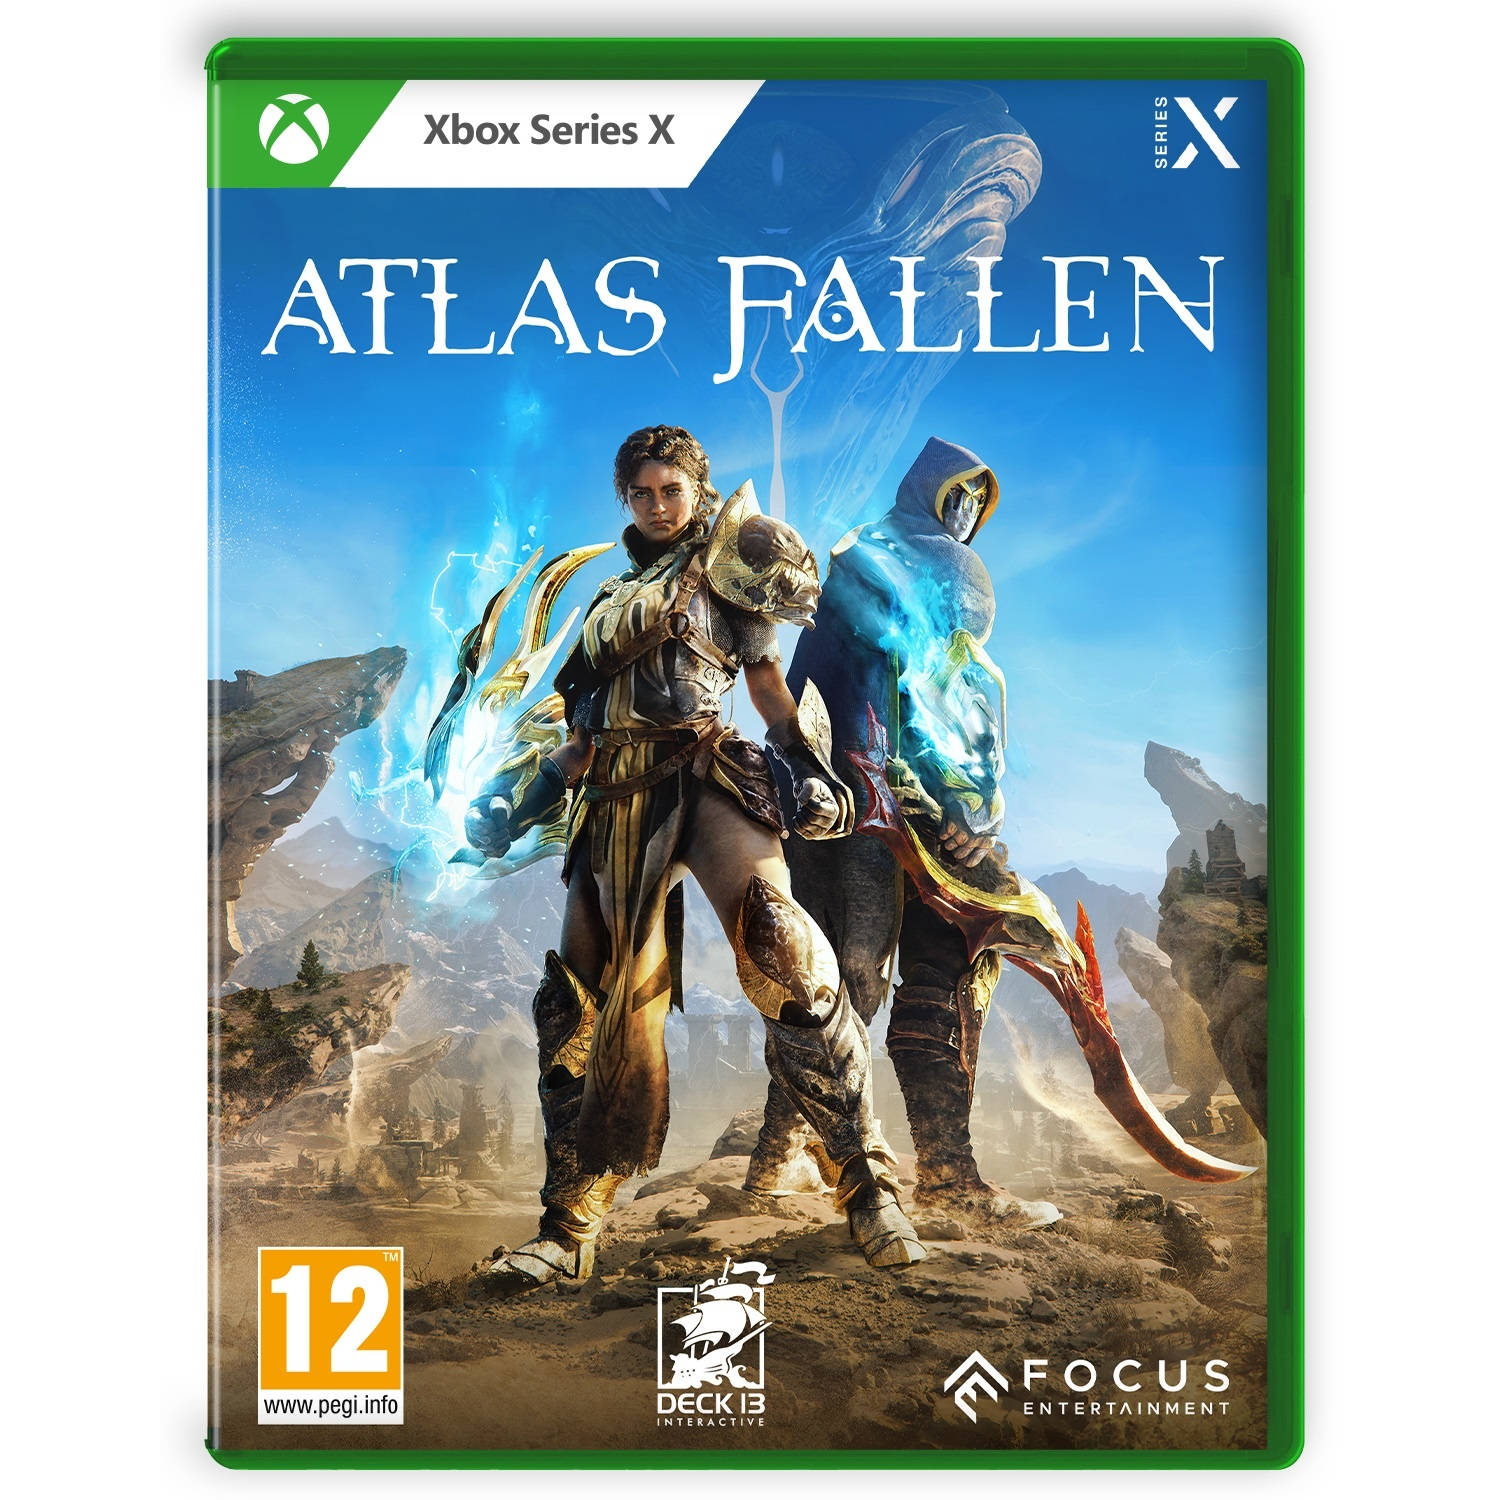 Atlas Fallen + Pre-order bonus Xbox Series X